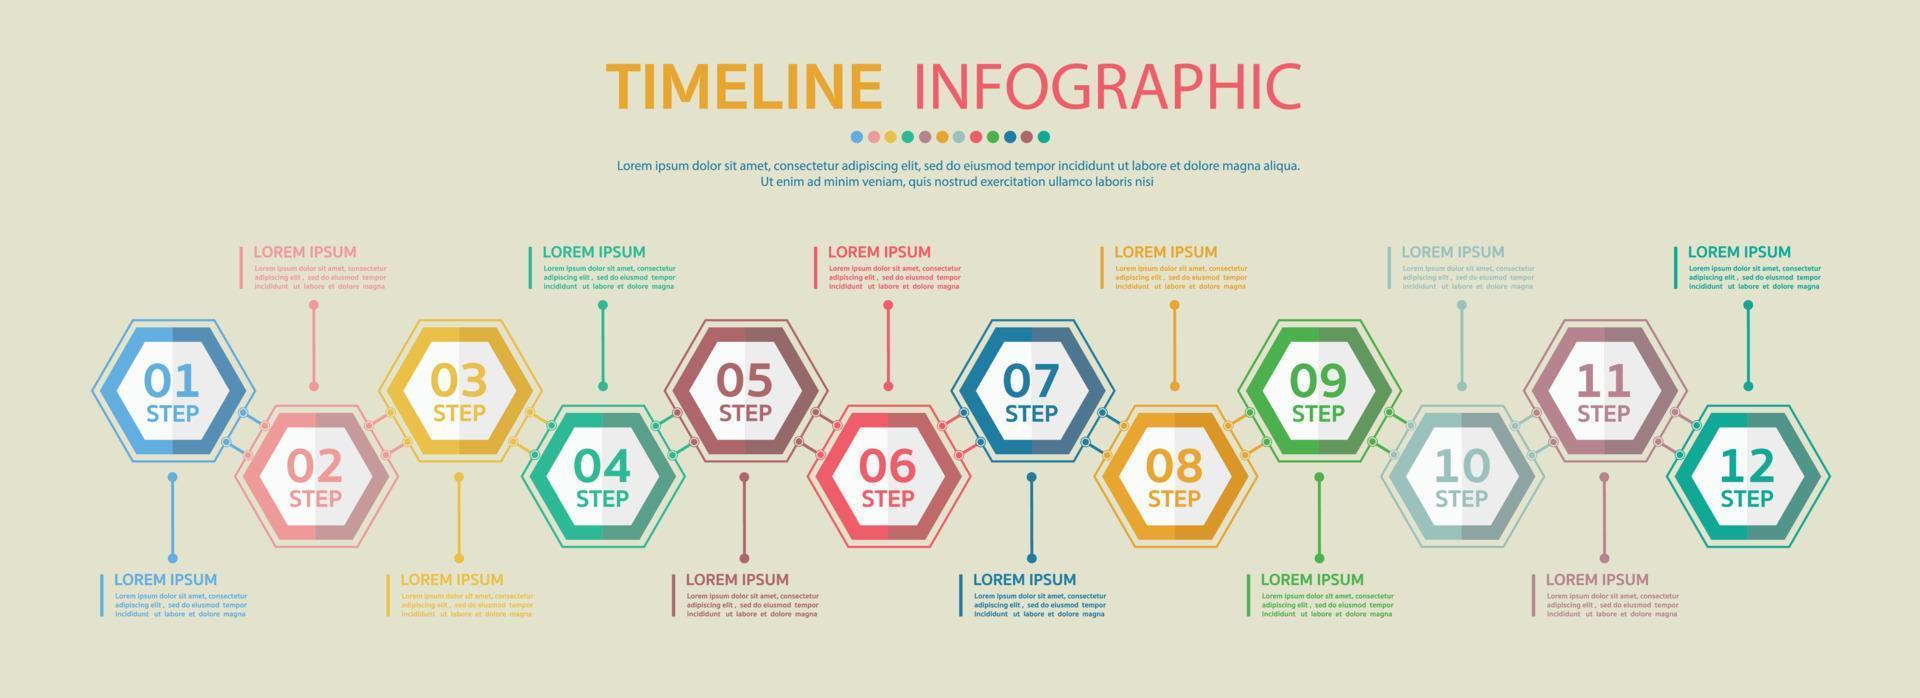 tidslinje för 12 månader, infografisk mall för företag. vektor